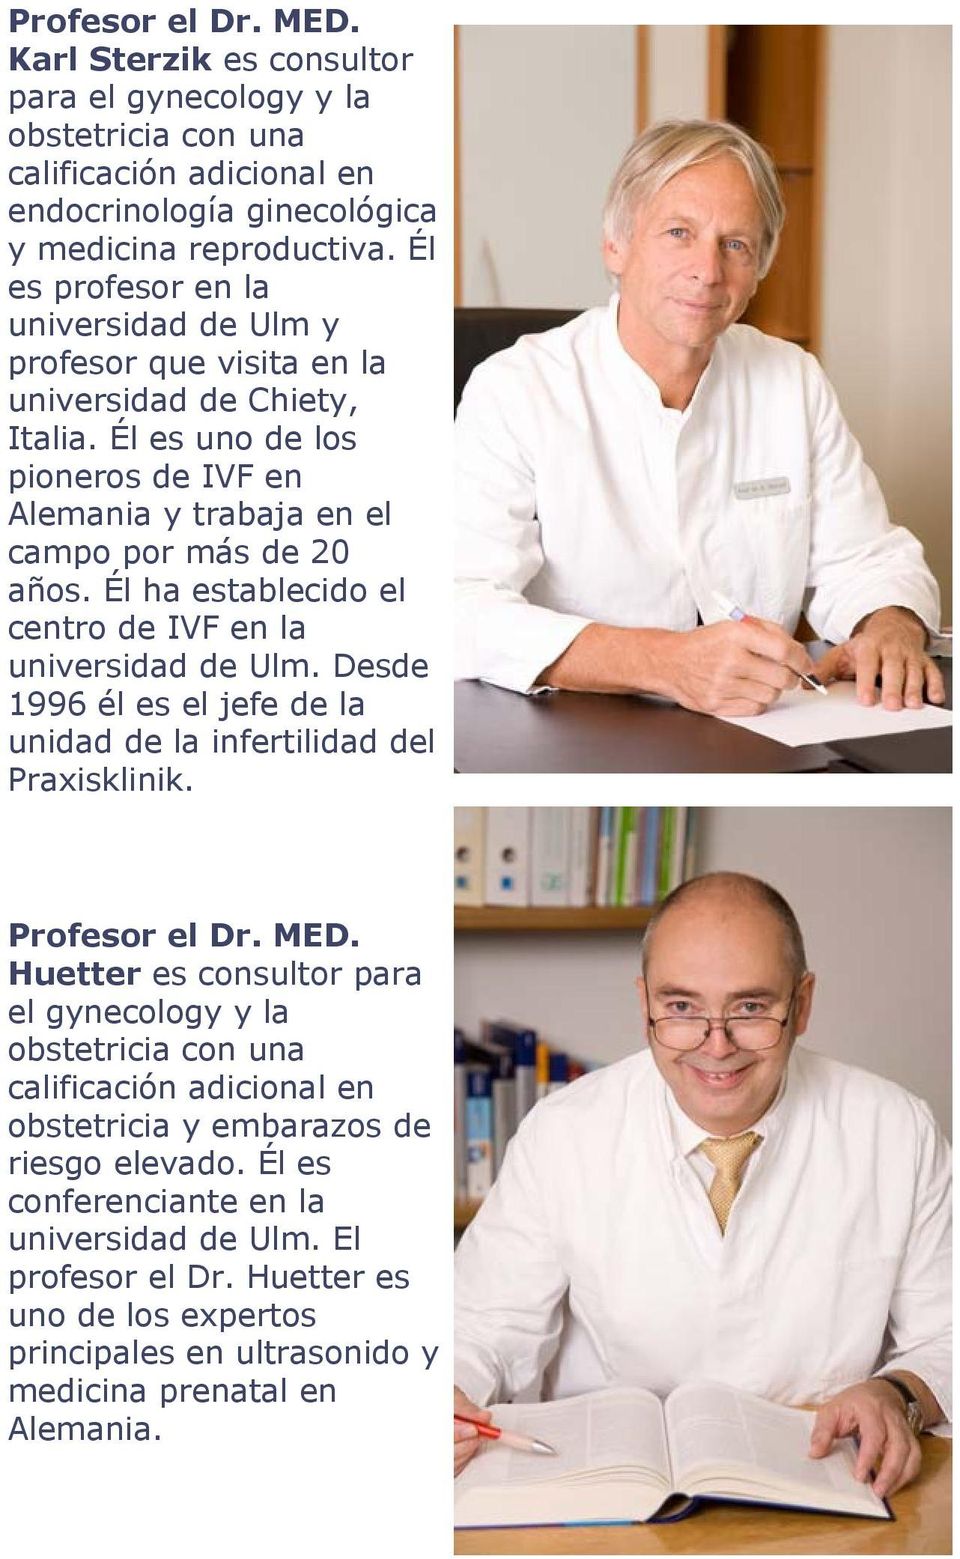 Él ha establecido el centro de IVF en la universidad de Ulm. Desde 1996 él es el jefe de la unidad de la infertilidad del Praxisklinik. Profesor el Dr. MED.